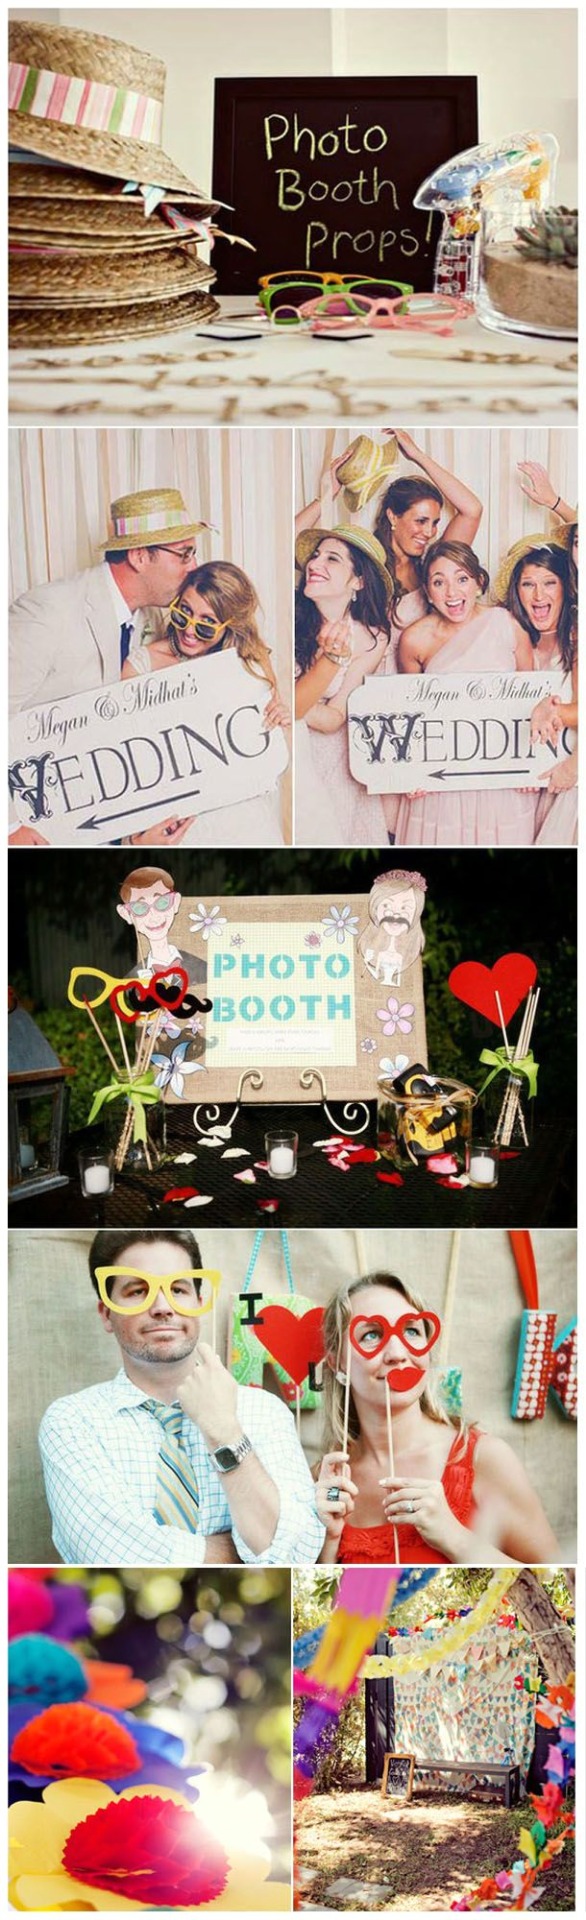 Создаем интересную фотозону для свадебной фотосессии